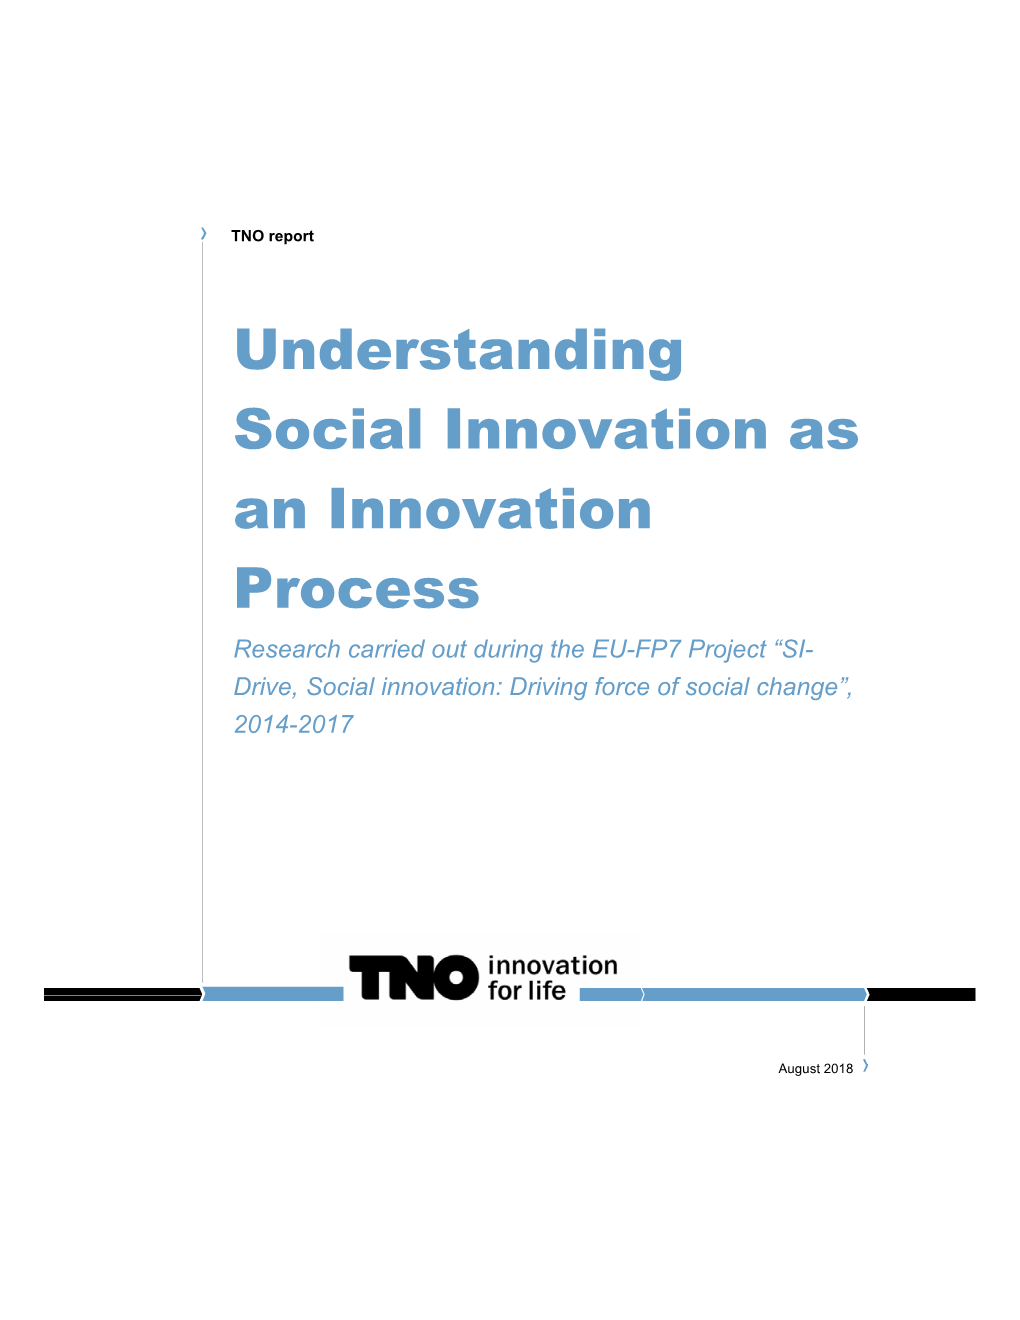 Understanding Social Innovation As an Innovation Process